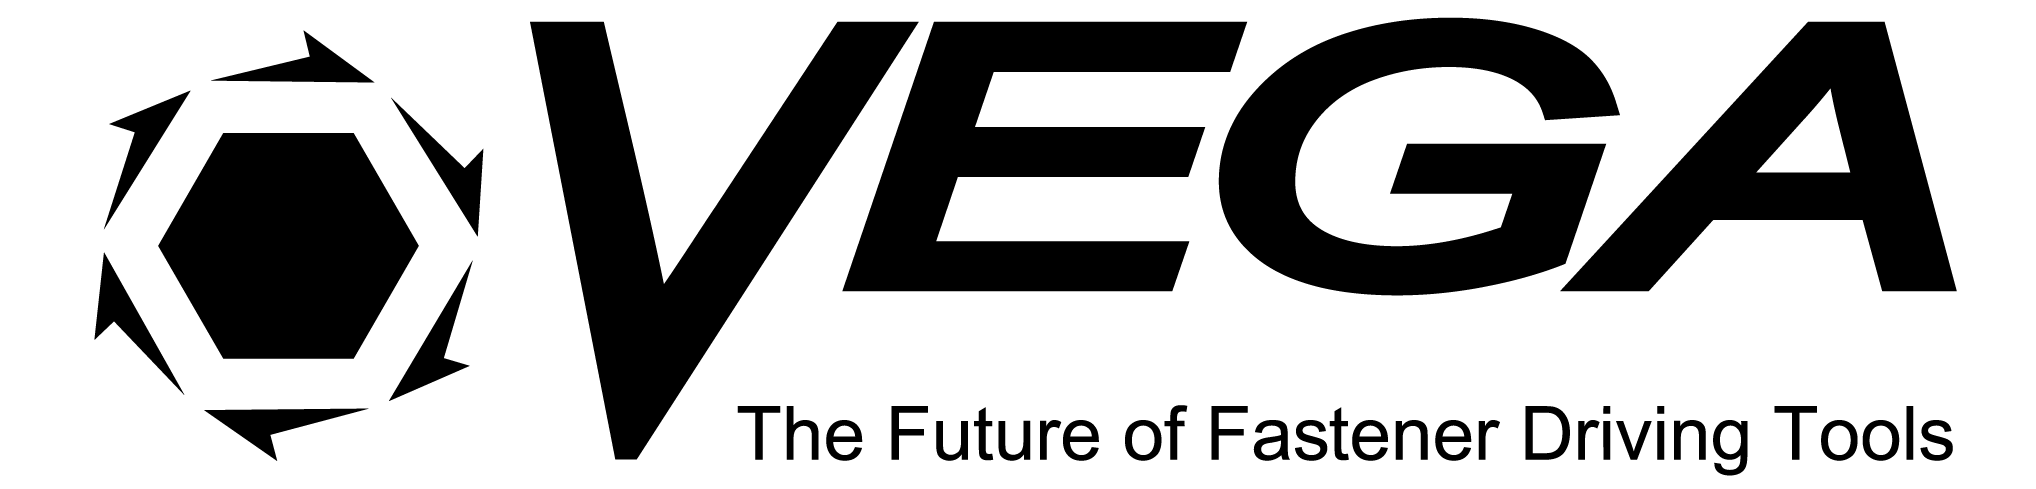 Vega Industries